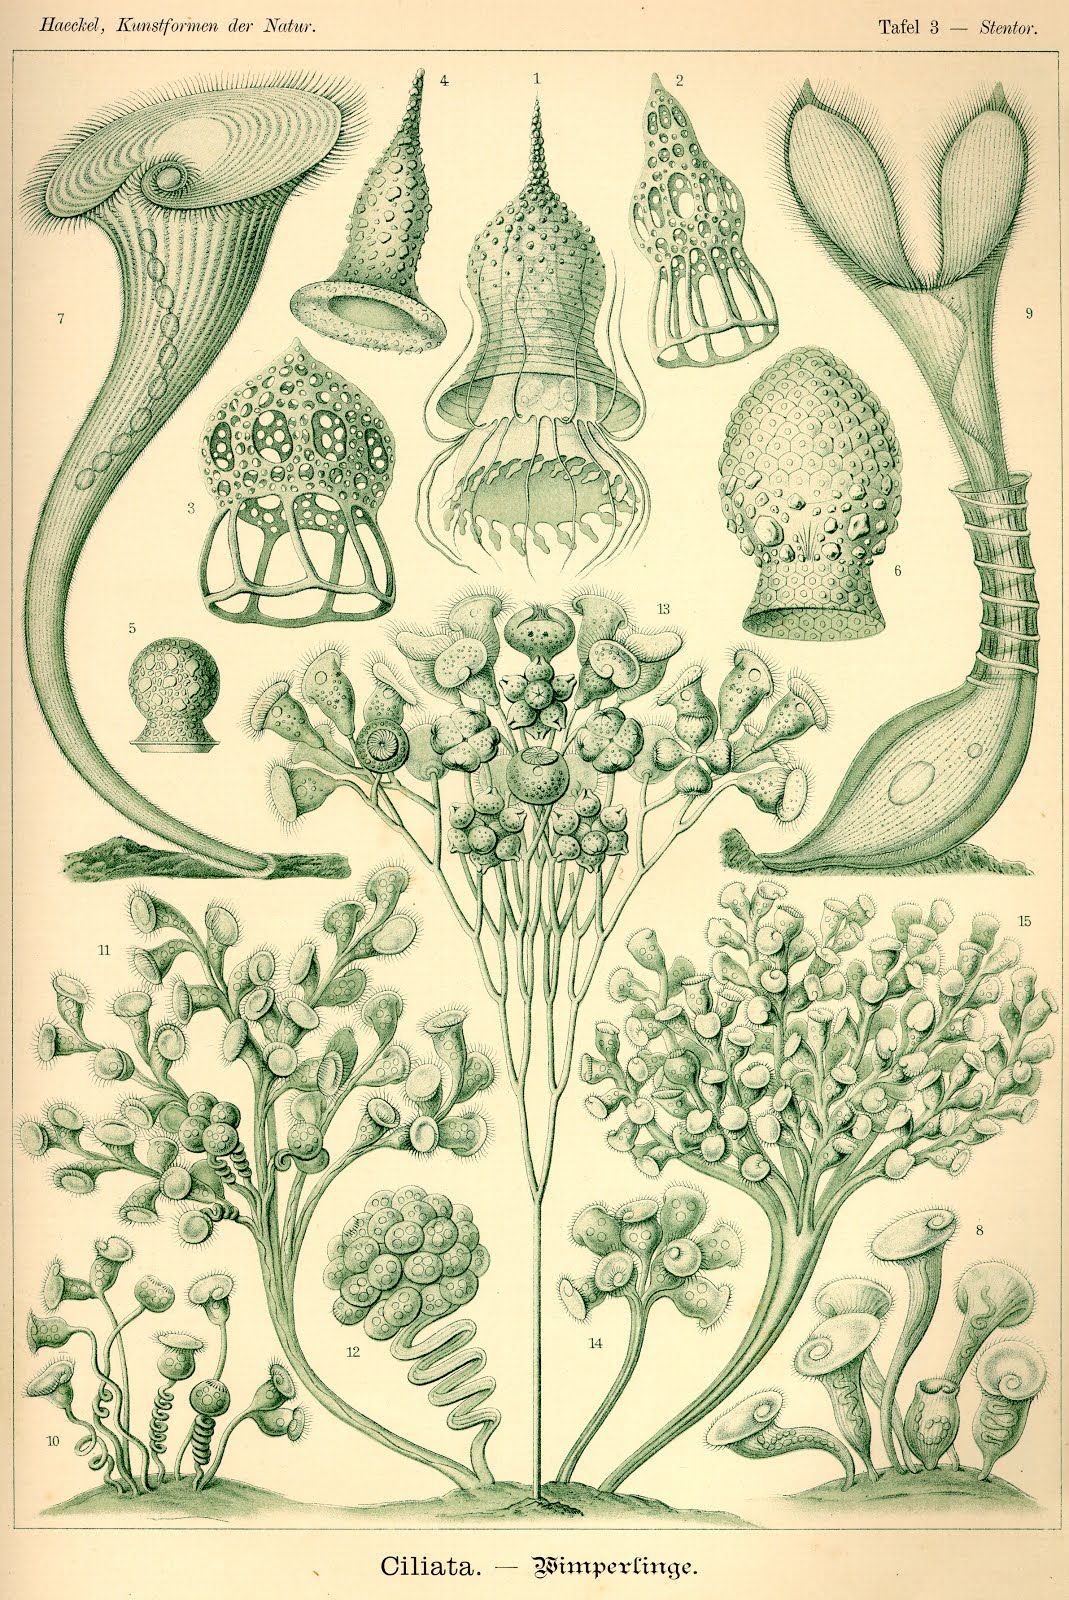 by Ernst Haeckel